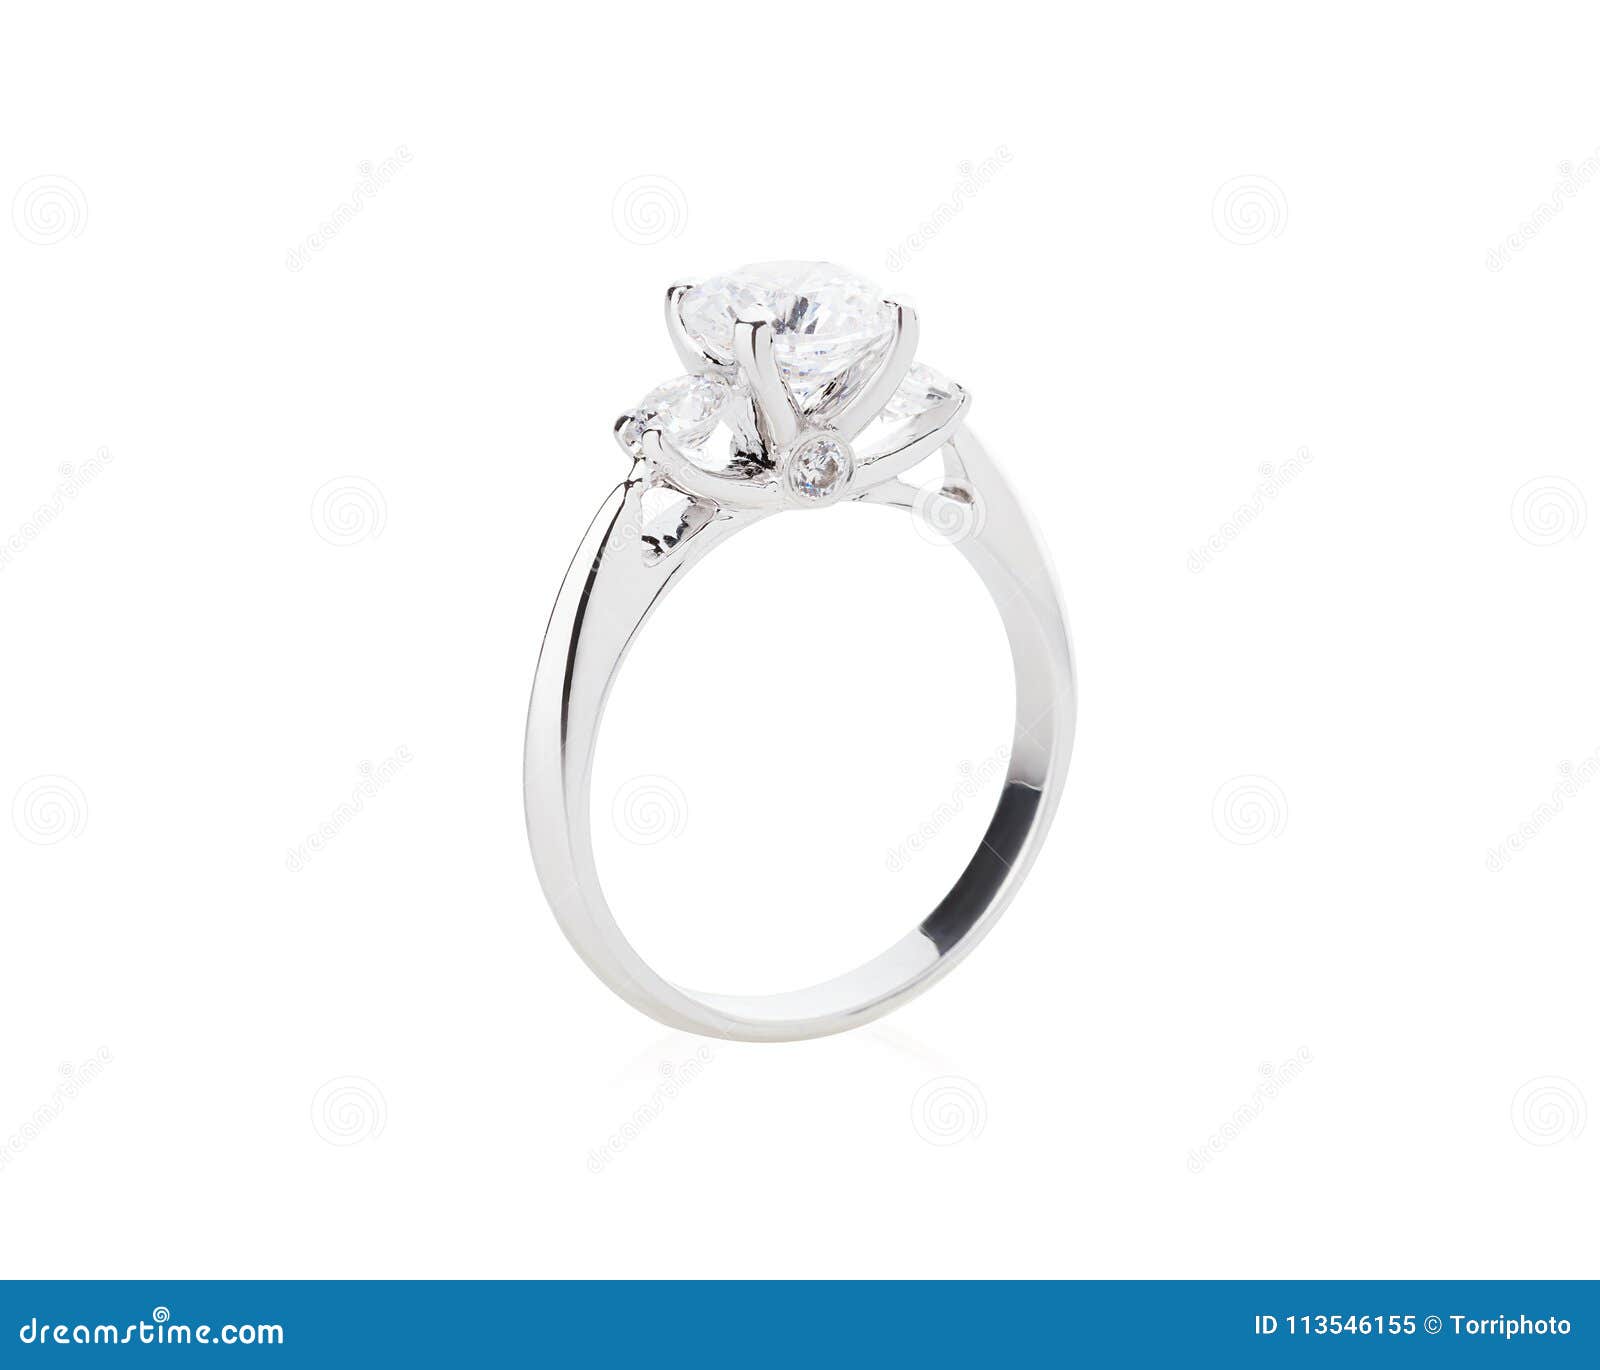 Wedding Diamond Ring Isolated on a White Background Stock Image - Image ...